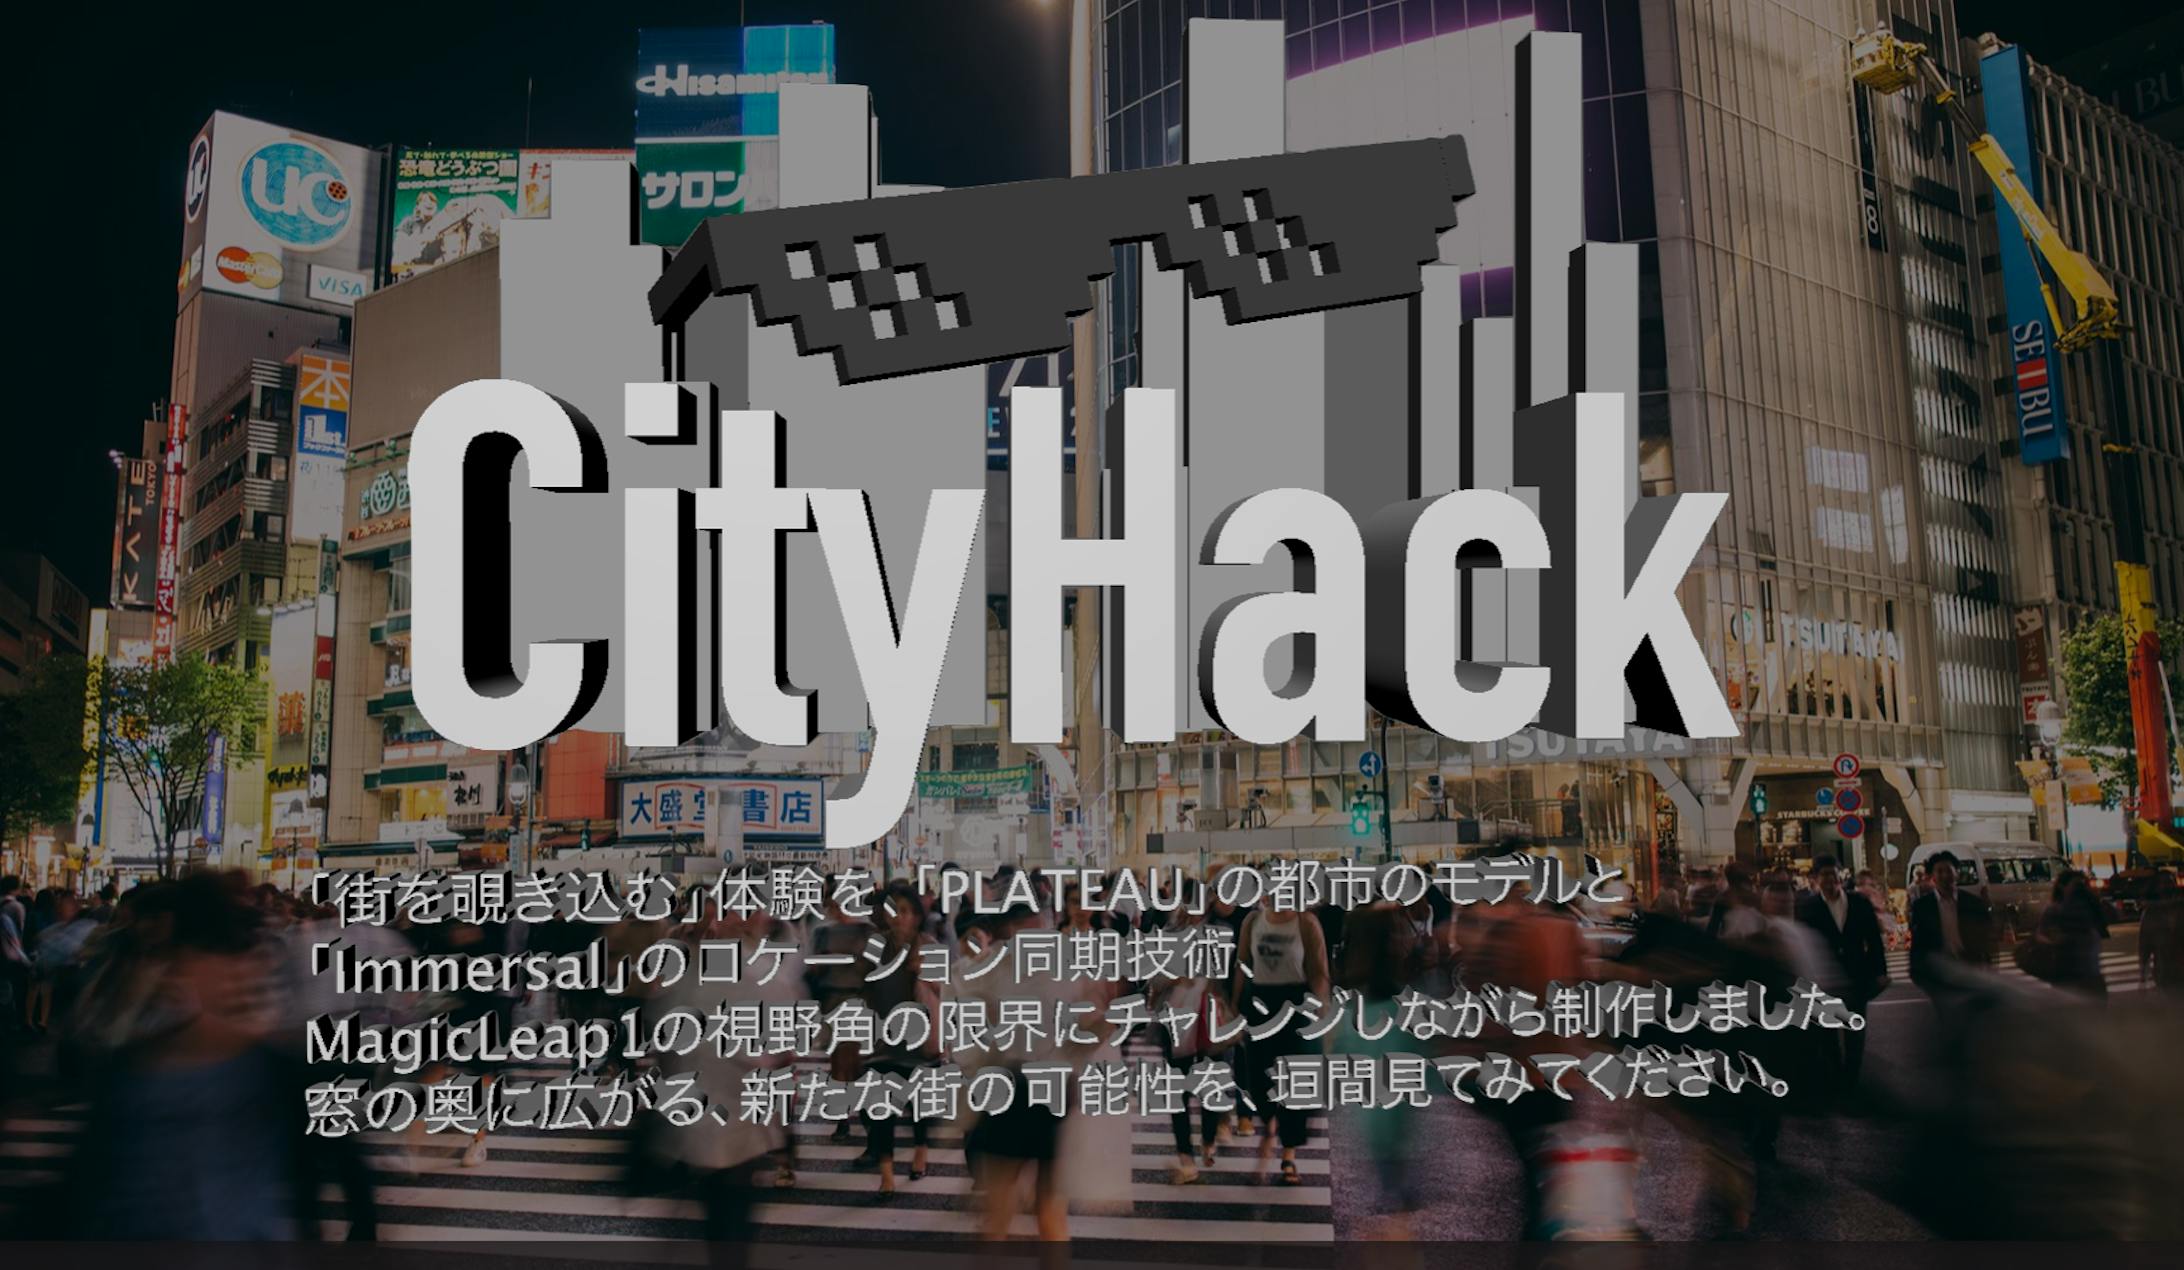 MagicLeap,Immersalを用いた都市ARアプリ「City Hack」制作-1